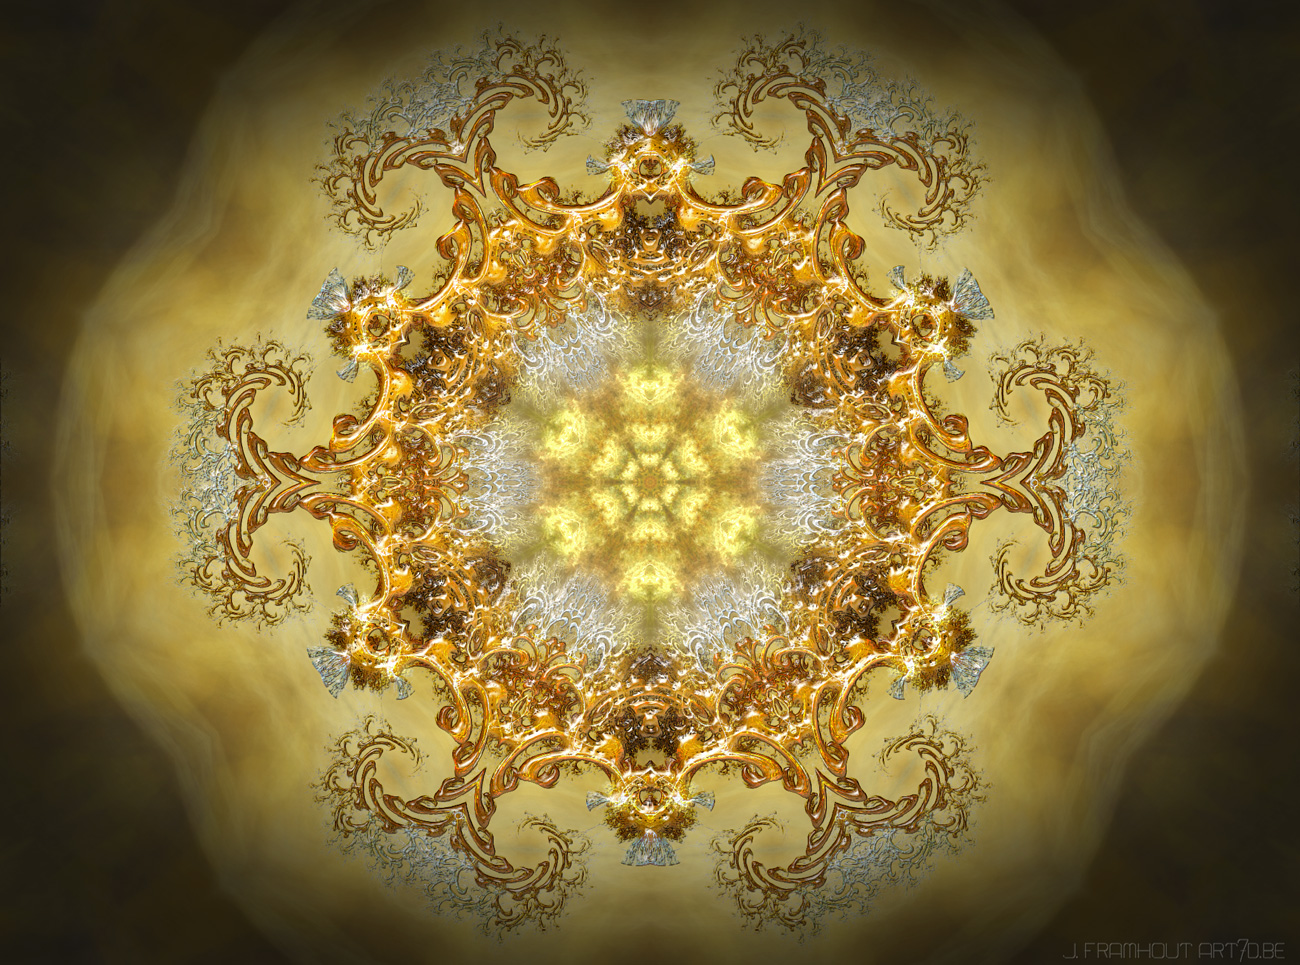 Bouquet, fractal art by Johan Framhout